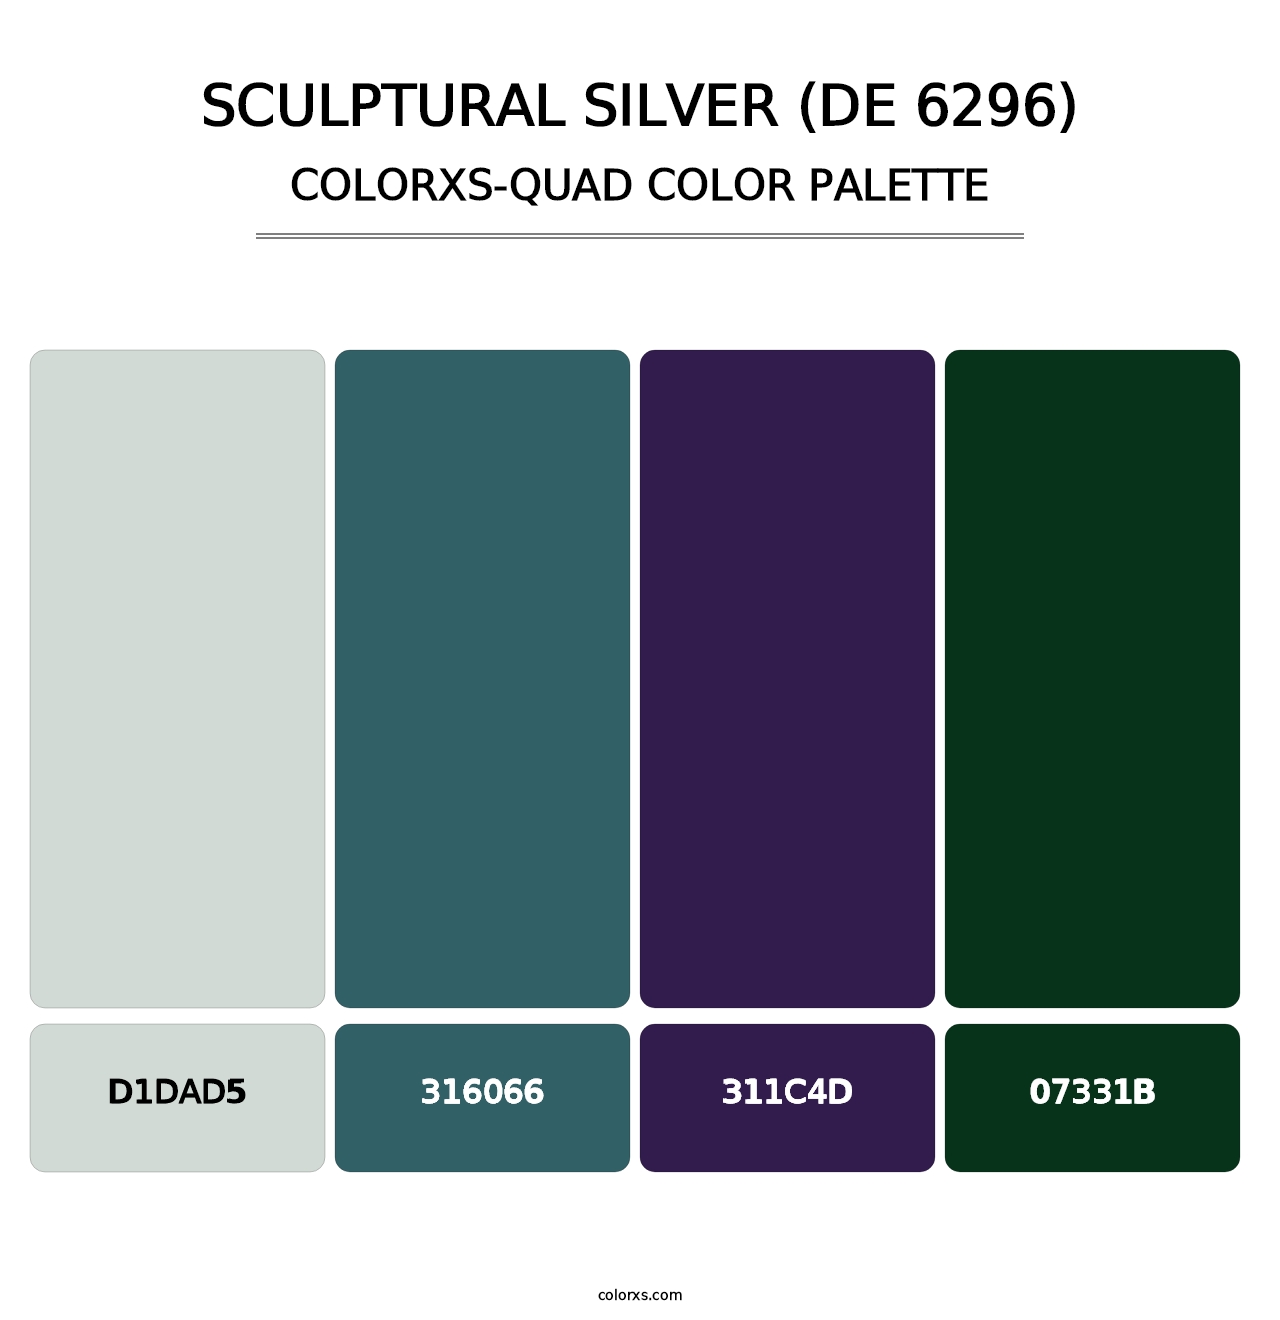 Sculptural Silver (DE 6296) - Colorxs Quad Palette